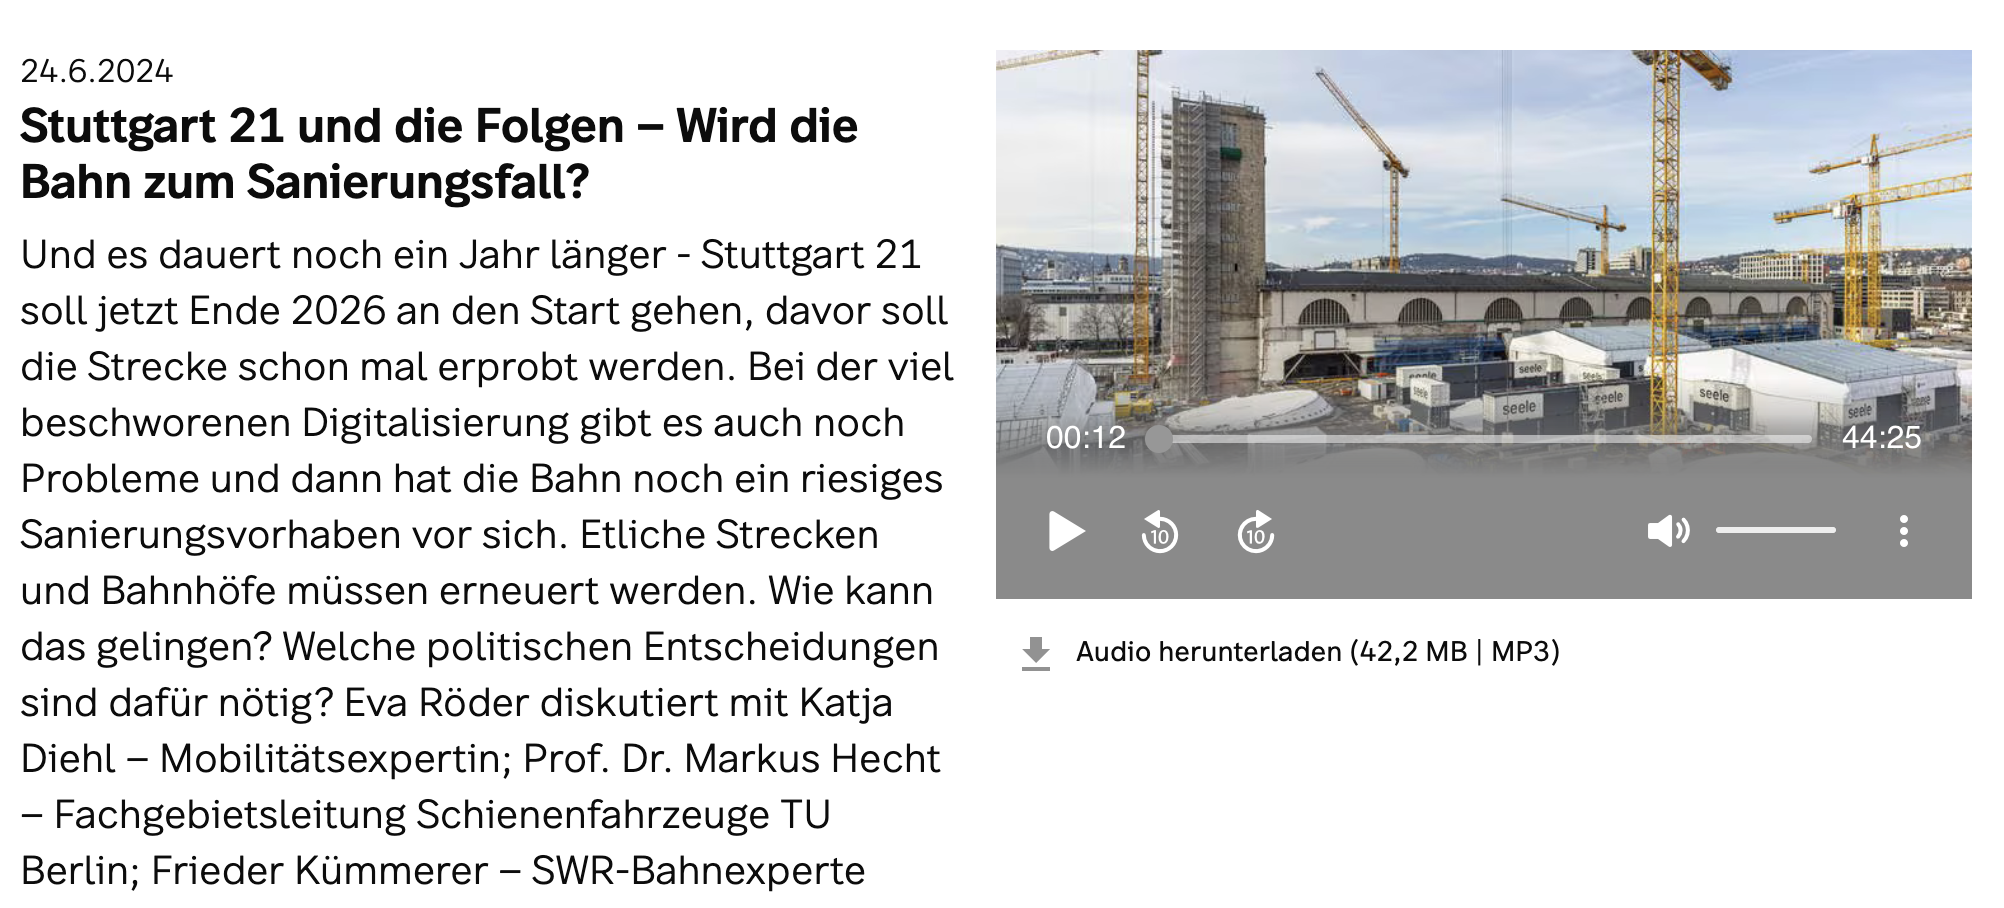 Zu Gast beim SWR: Stuttgart 21 und die Folgen – Wird die Bahn zum Sanierungsfall?